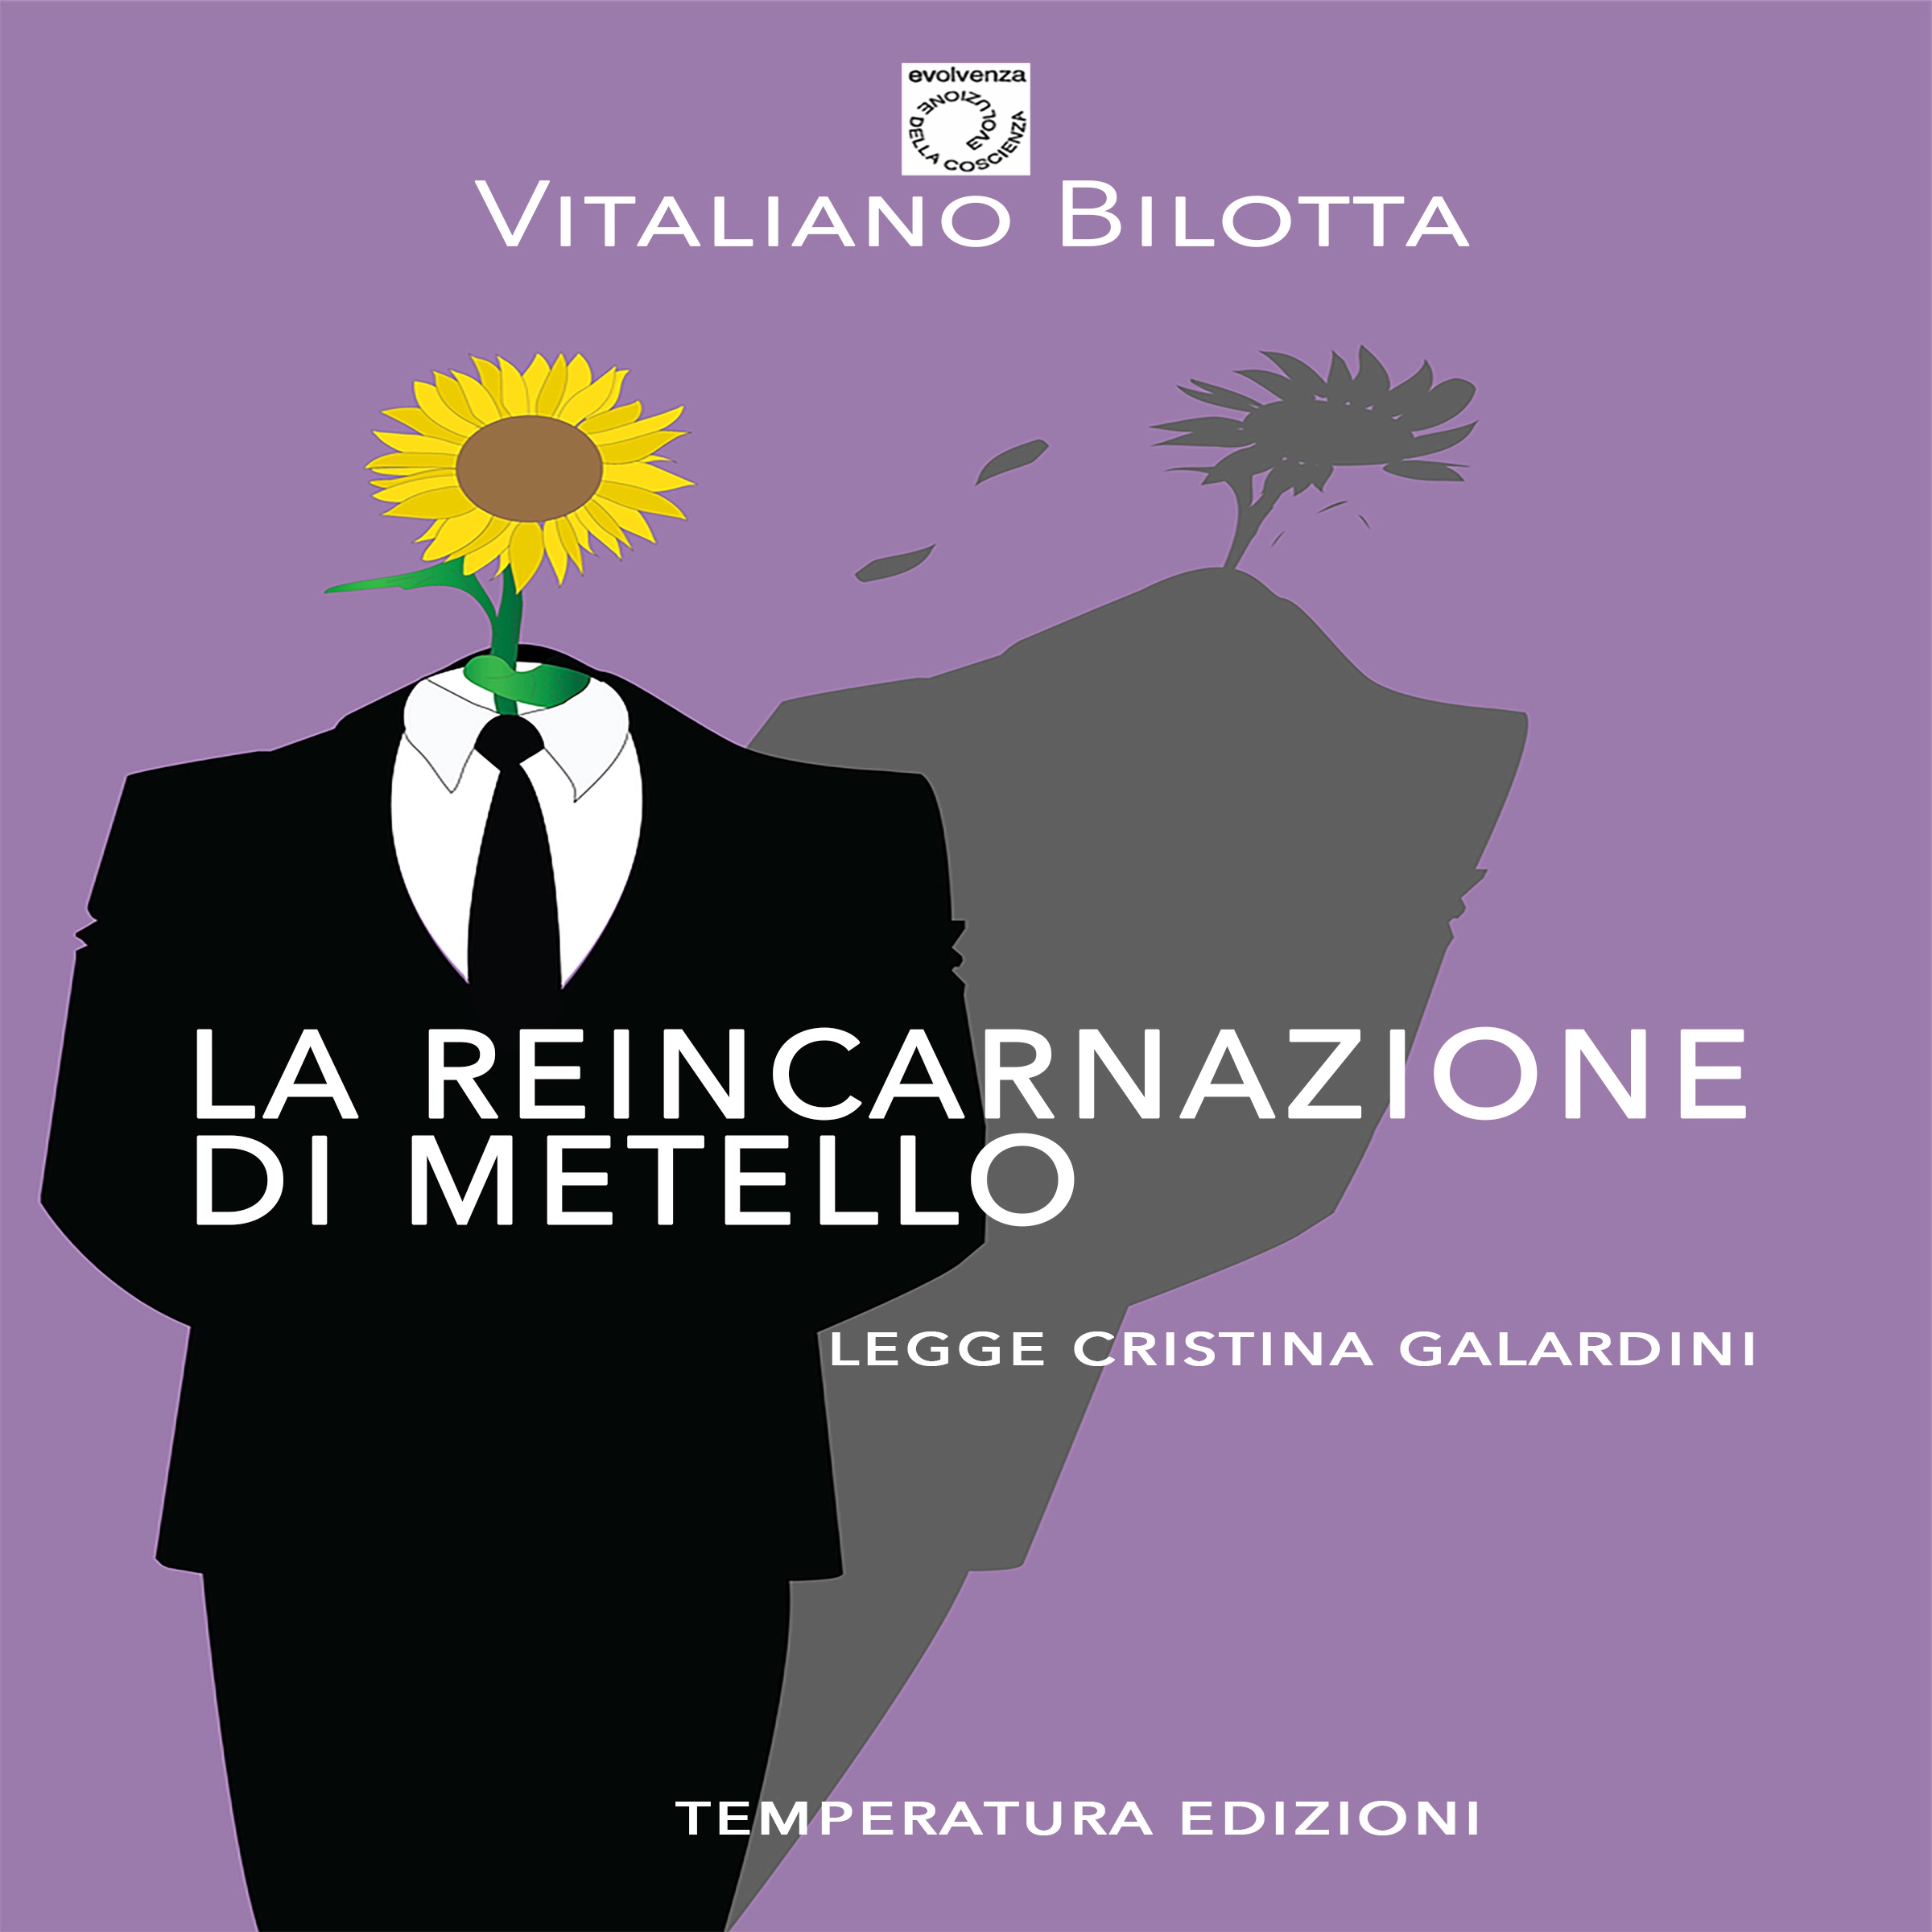 La Reincarnazione di Metello Audiobook by Vitaliano Bilotta